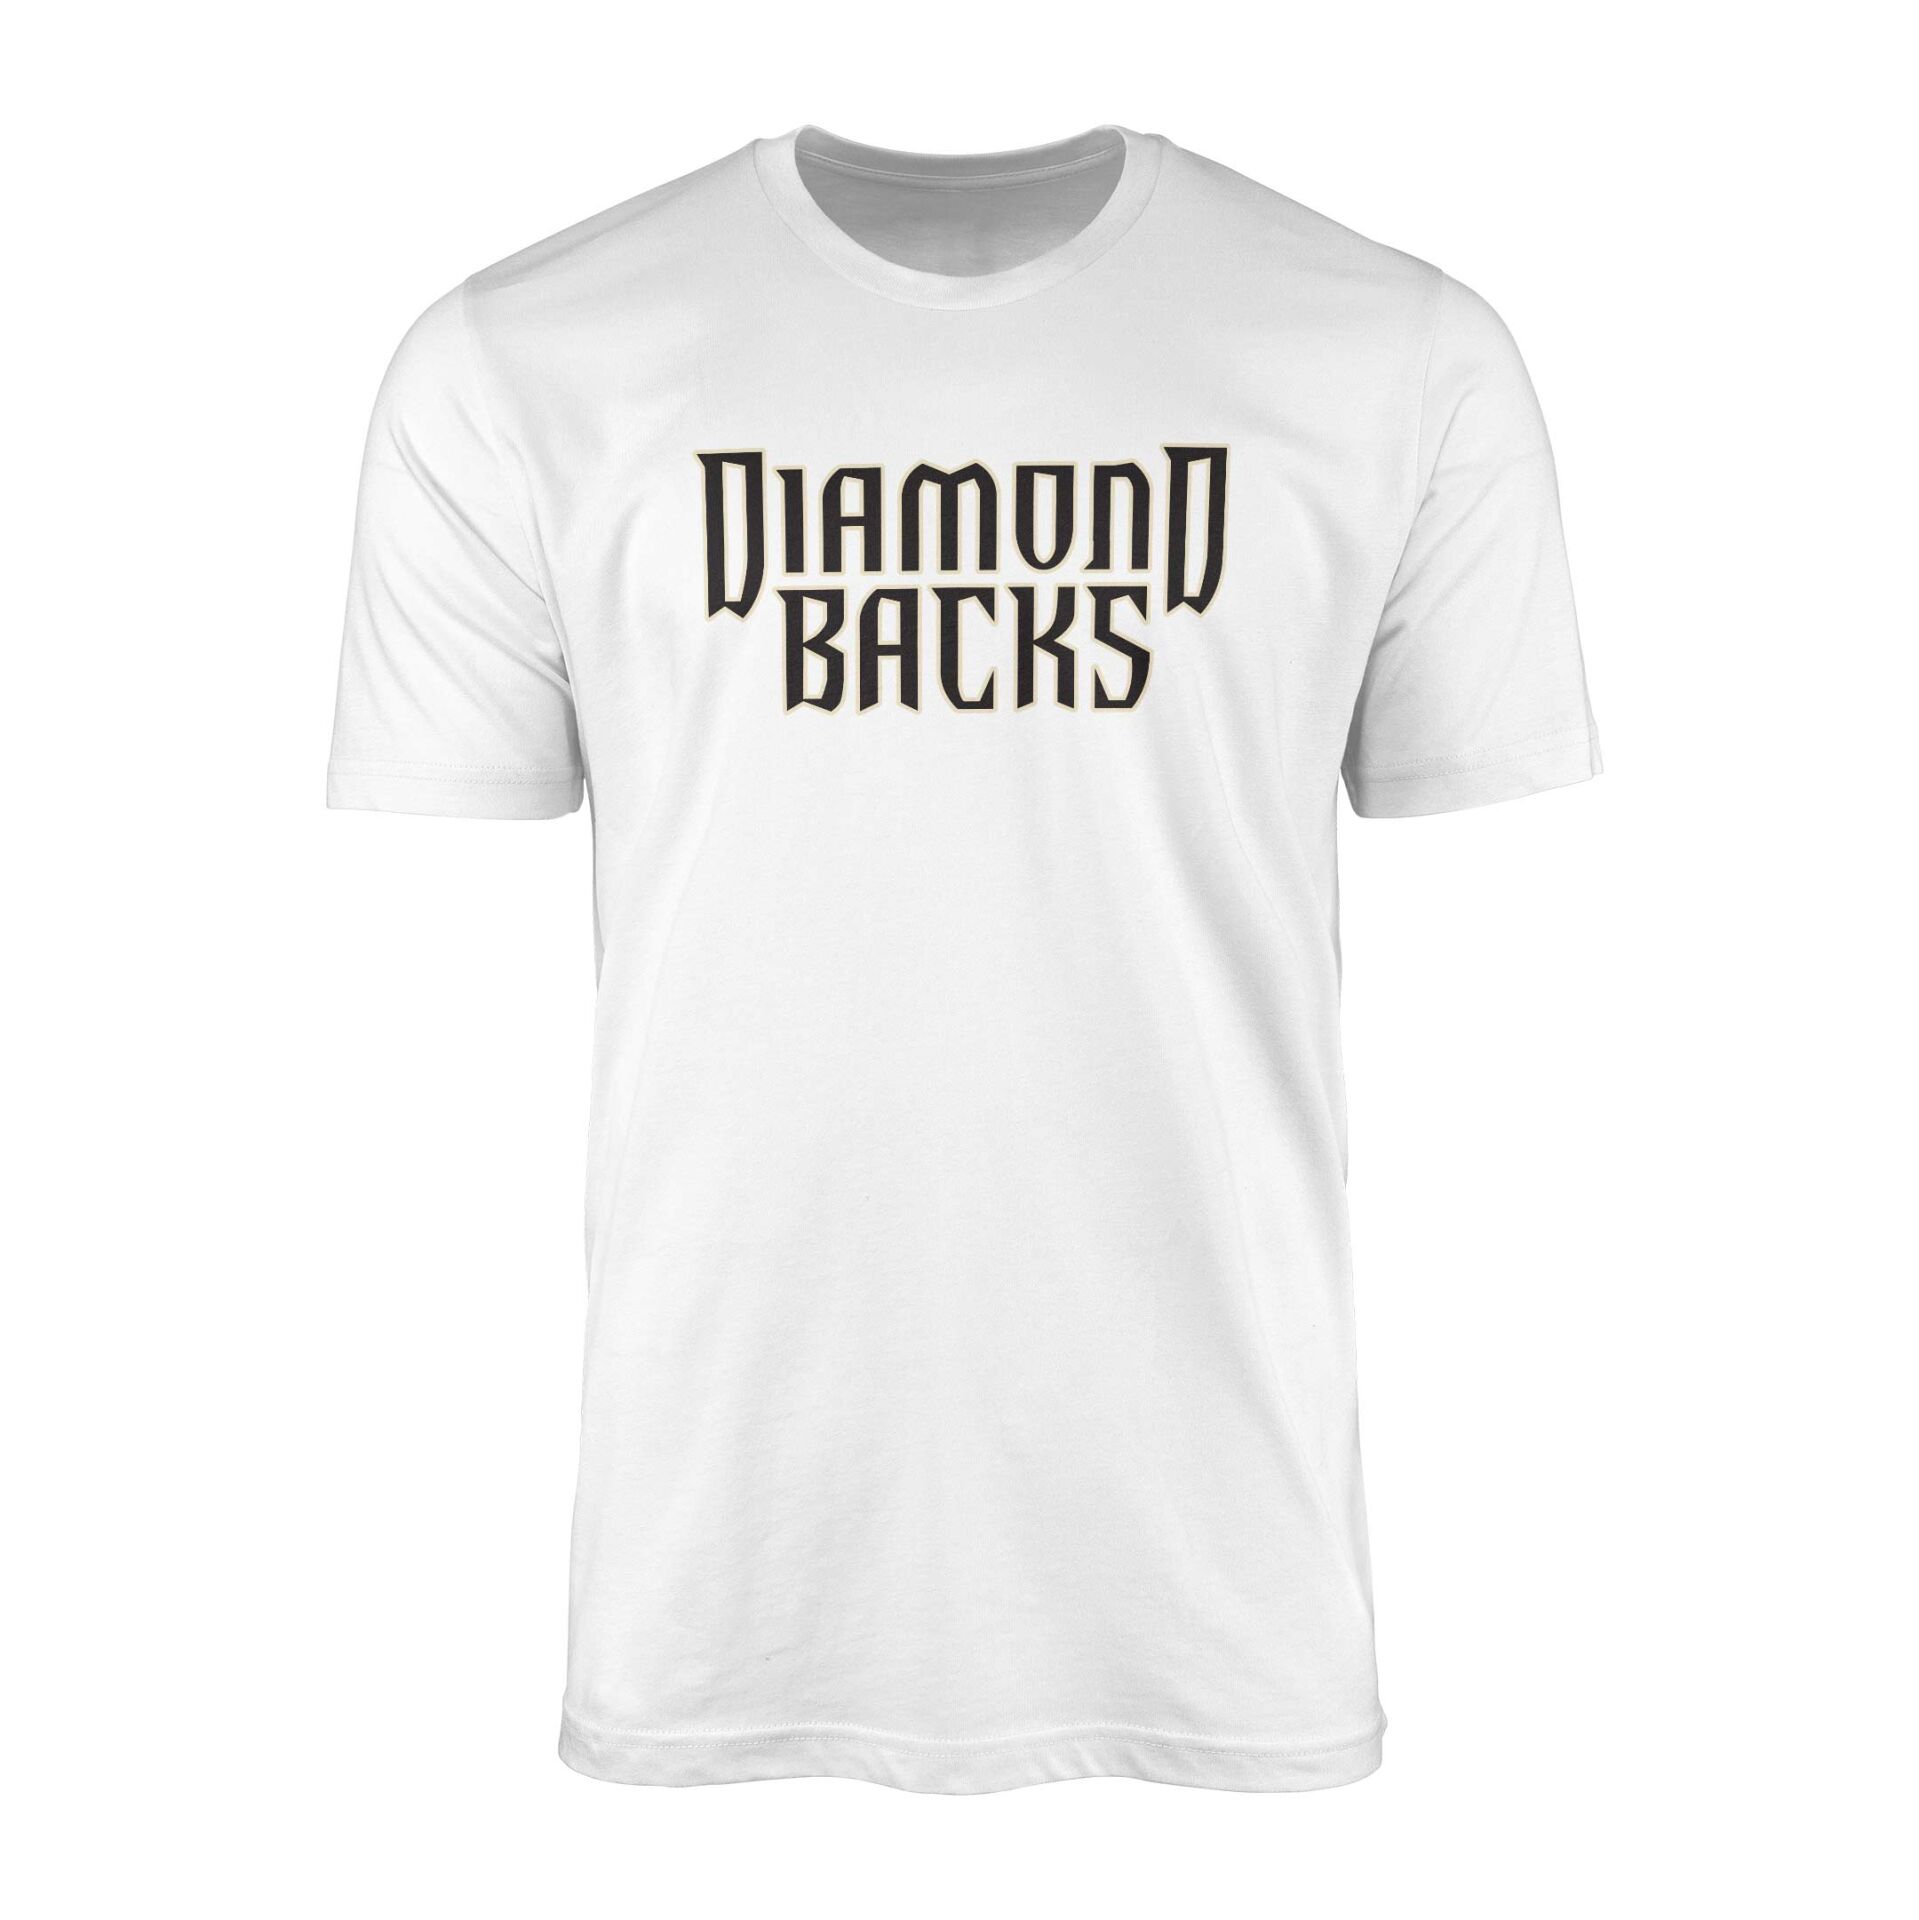 Diamondbacks Beyaz Tişört